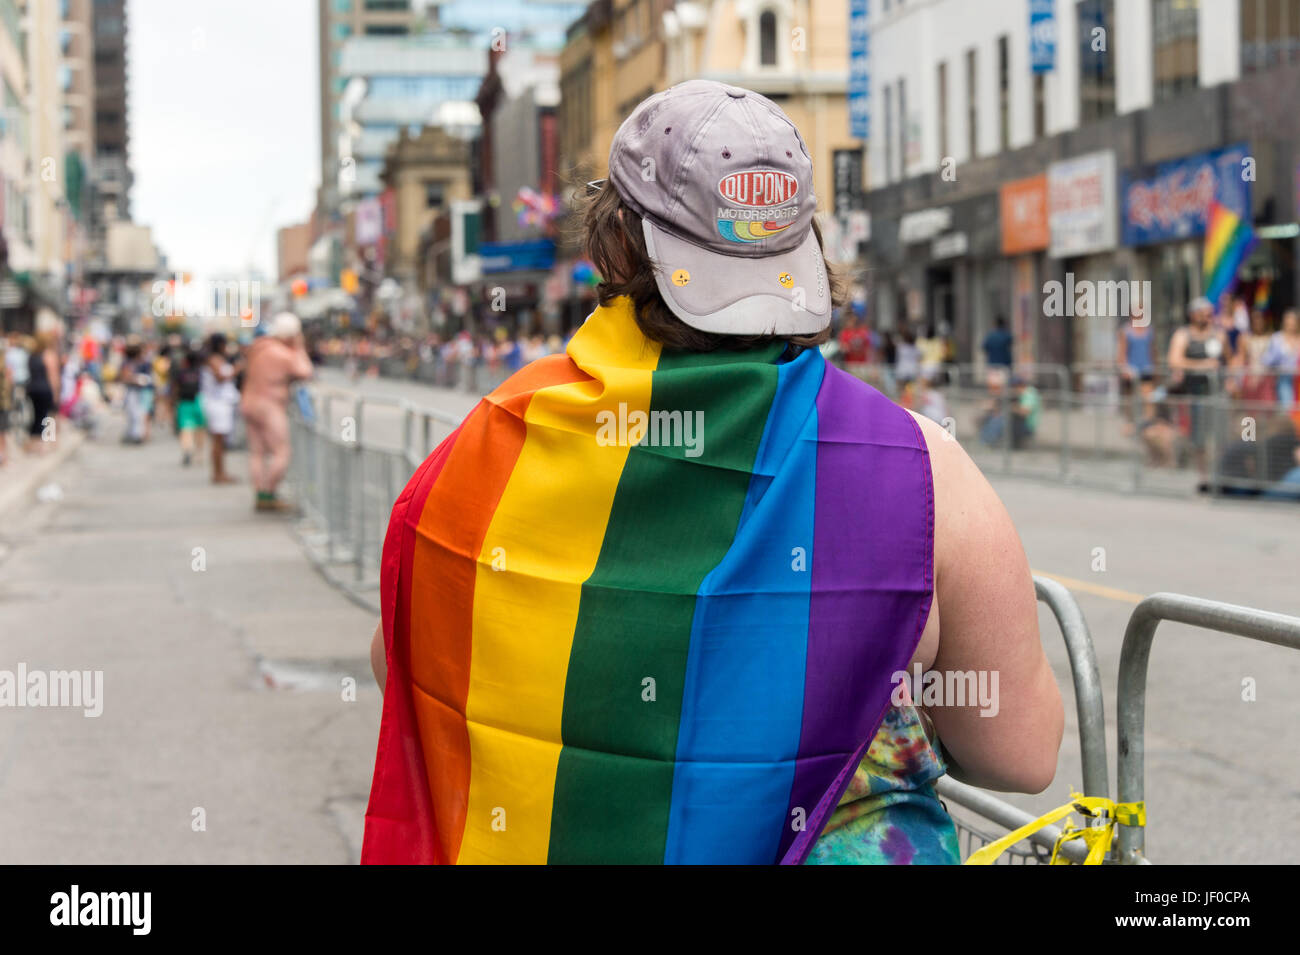 Toronto, CA - 25 juin 2017 : une fille avec drapeau gay arc-en-ciel sur le dos à la parade de la Fierté gaie de Toronto Banque D'Images